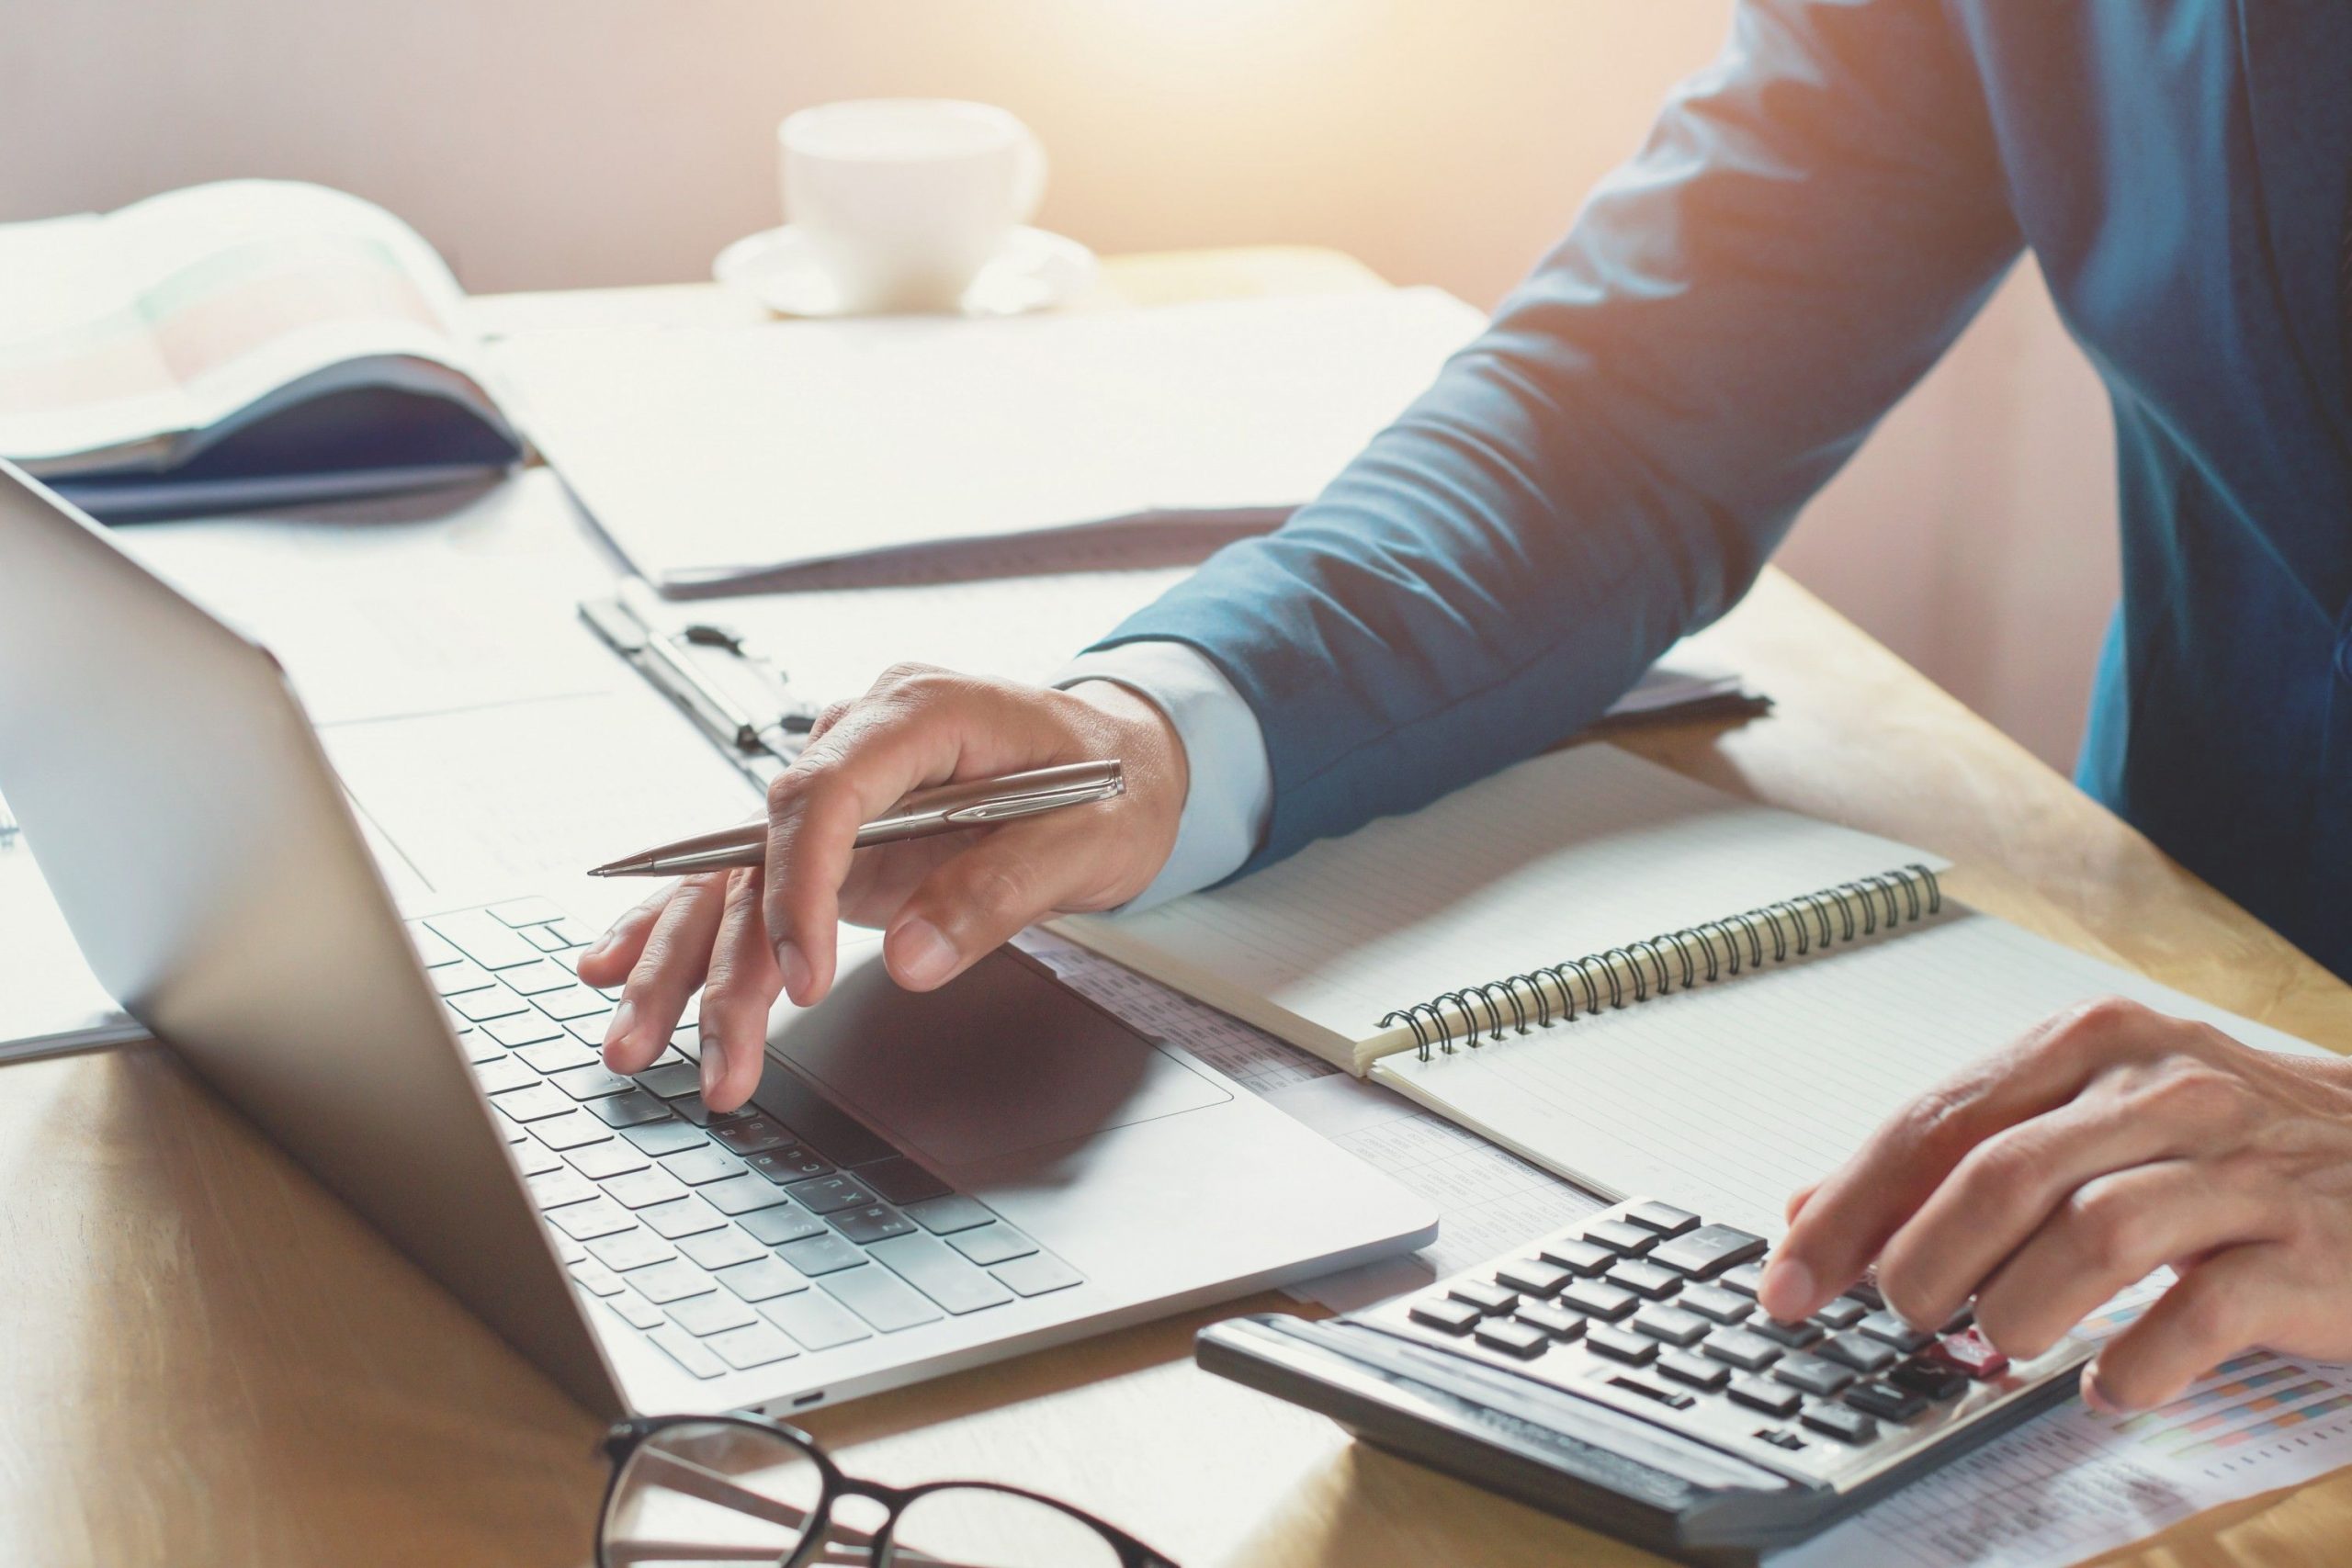 custeio por absorção - homem utilizando notebook e fazendo contas com uma calculadora em uma mesa de escritório